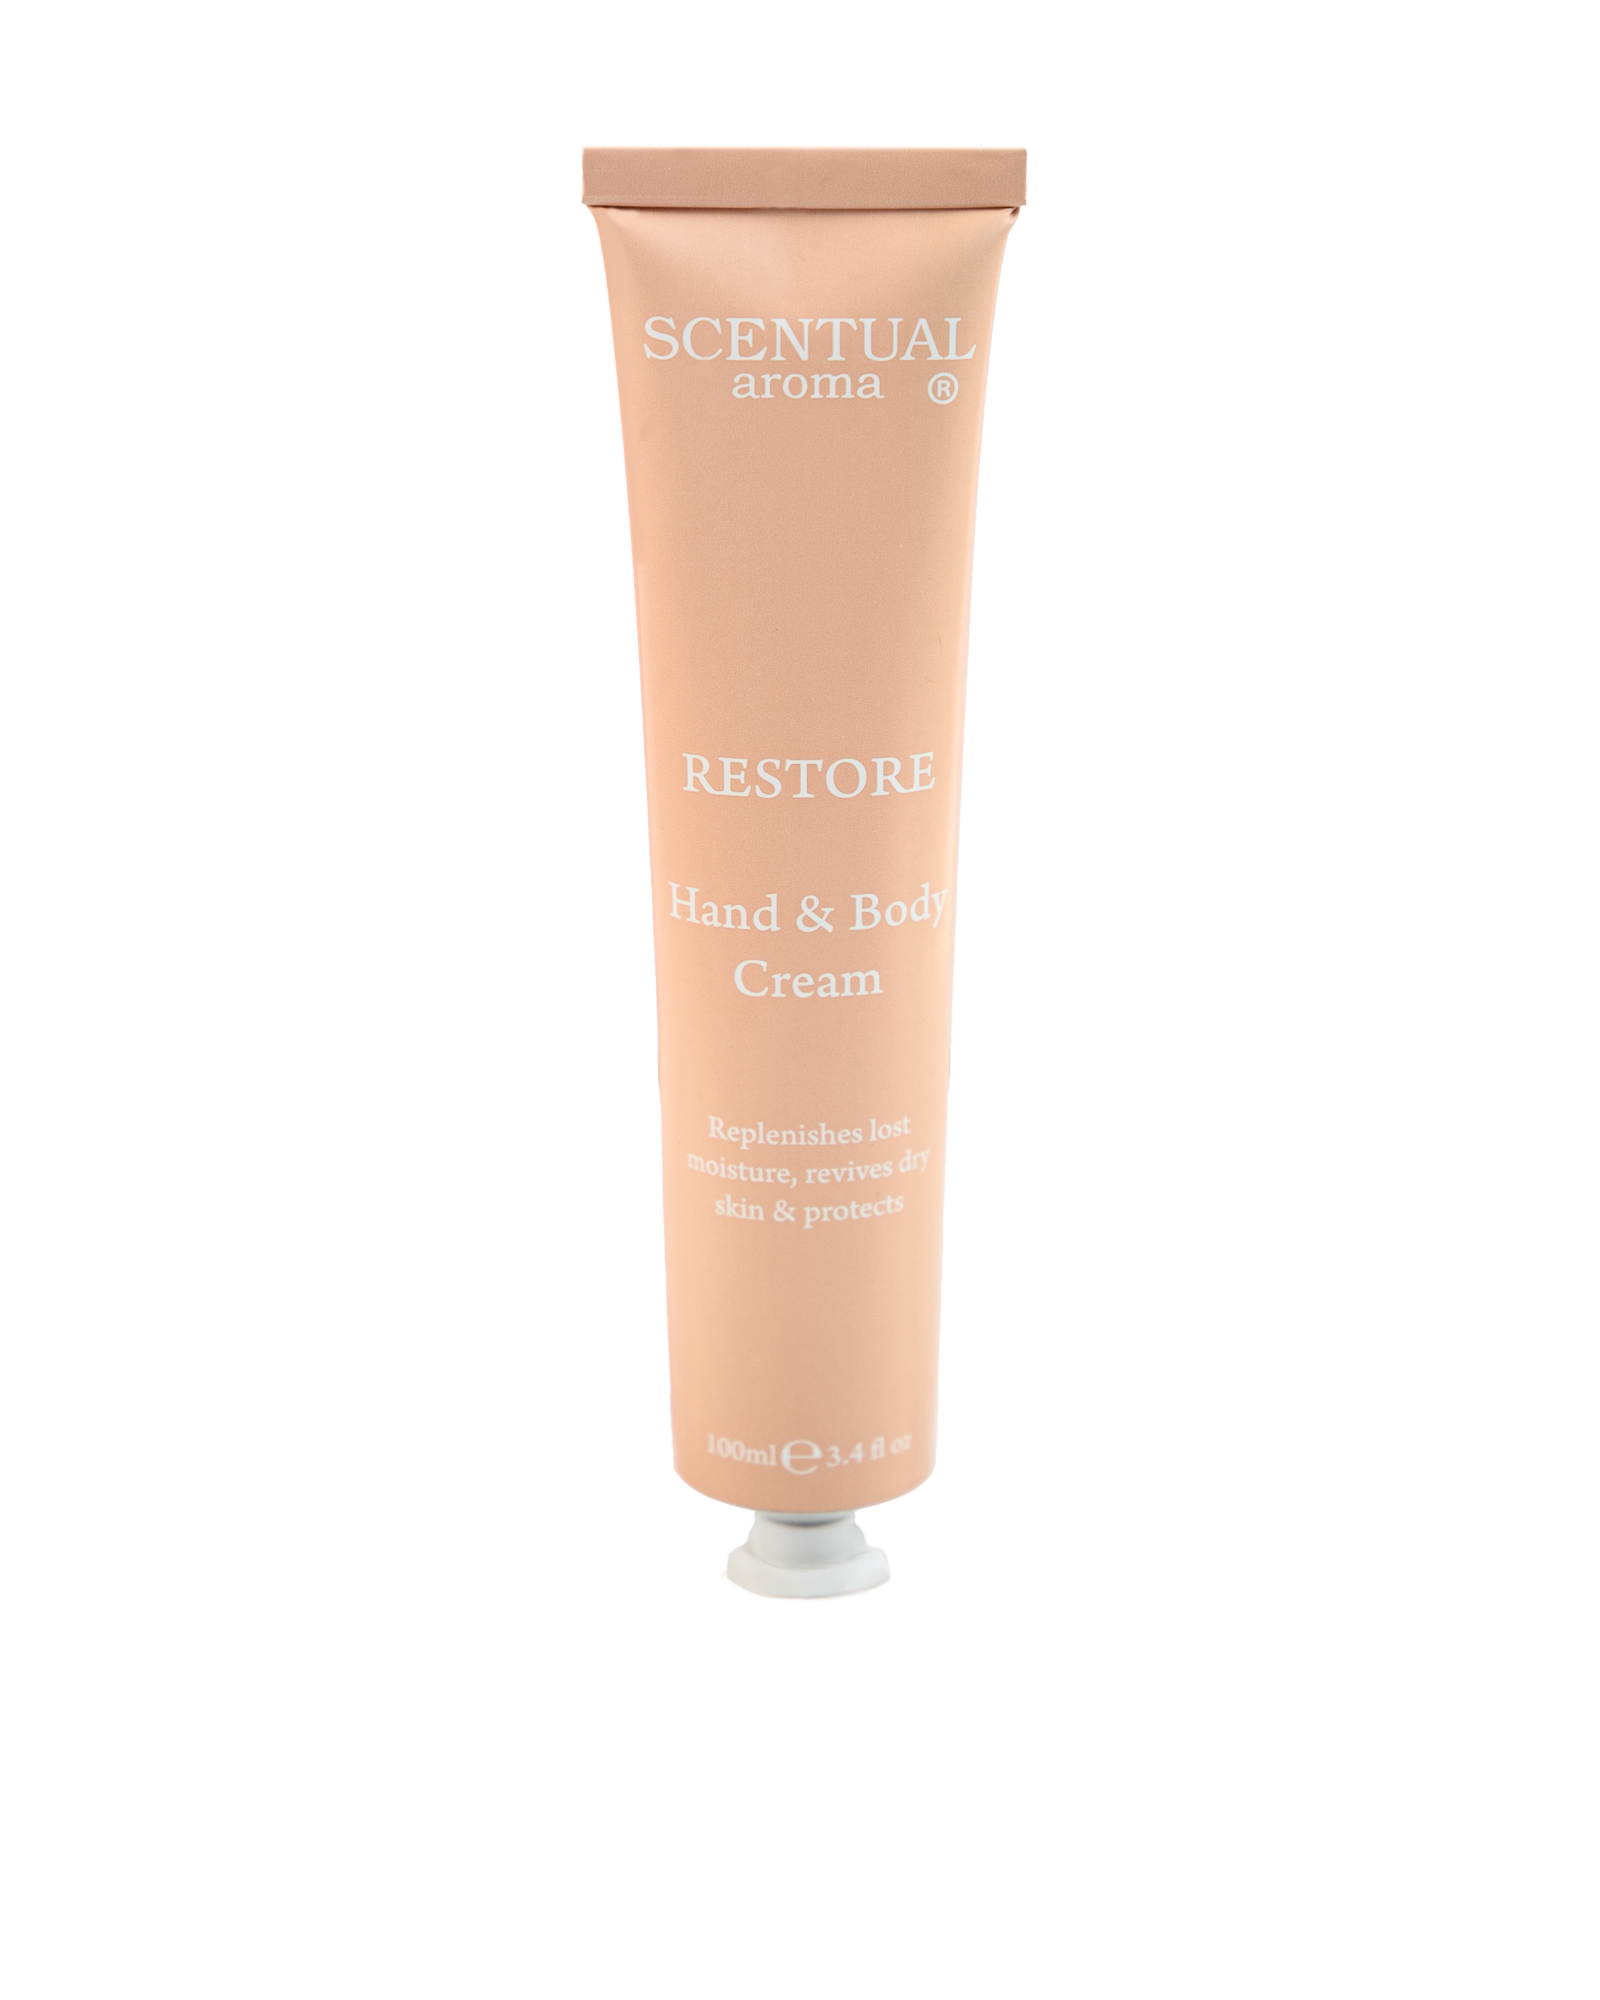 RESTORE Hand & Body Cream by Scentual Aroma